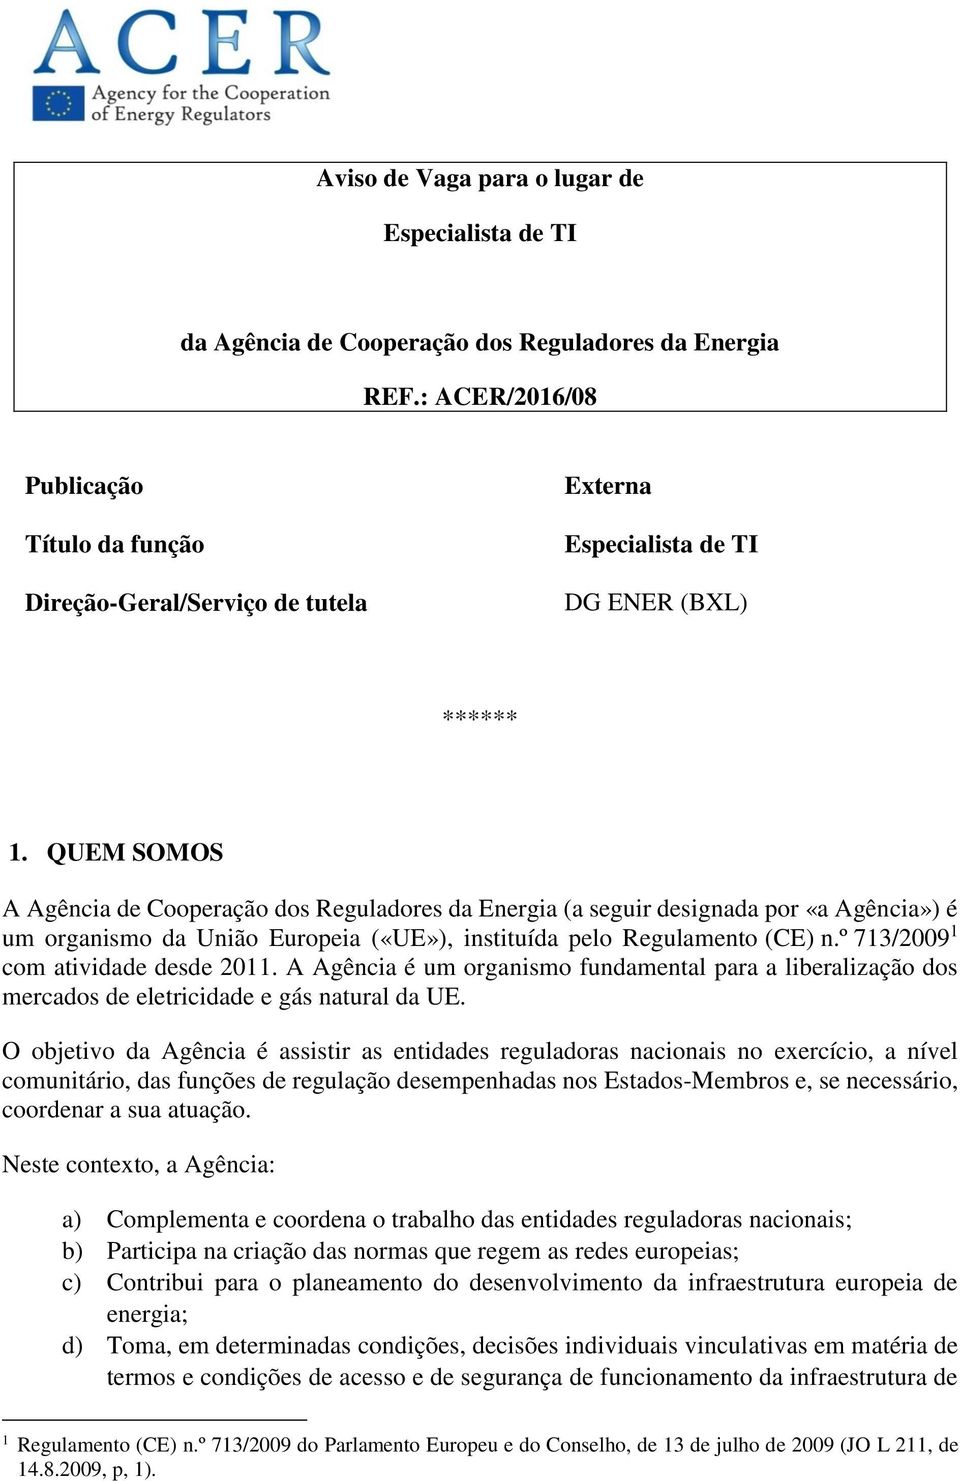 QUEM SOMOS A Agência de Cooperação dos Reguladores da Energia (a seguir designada por «a Agência») é um organismo da União Europeia («UE»), instituída pelo Regulamento (CE) n.